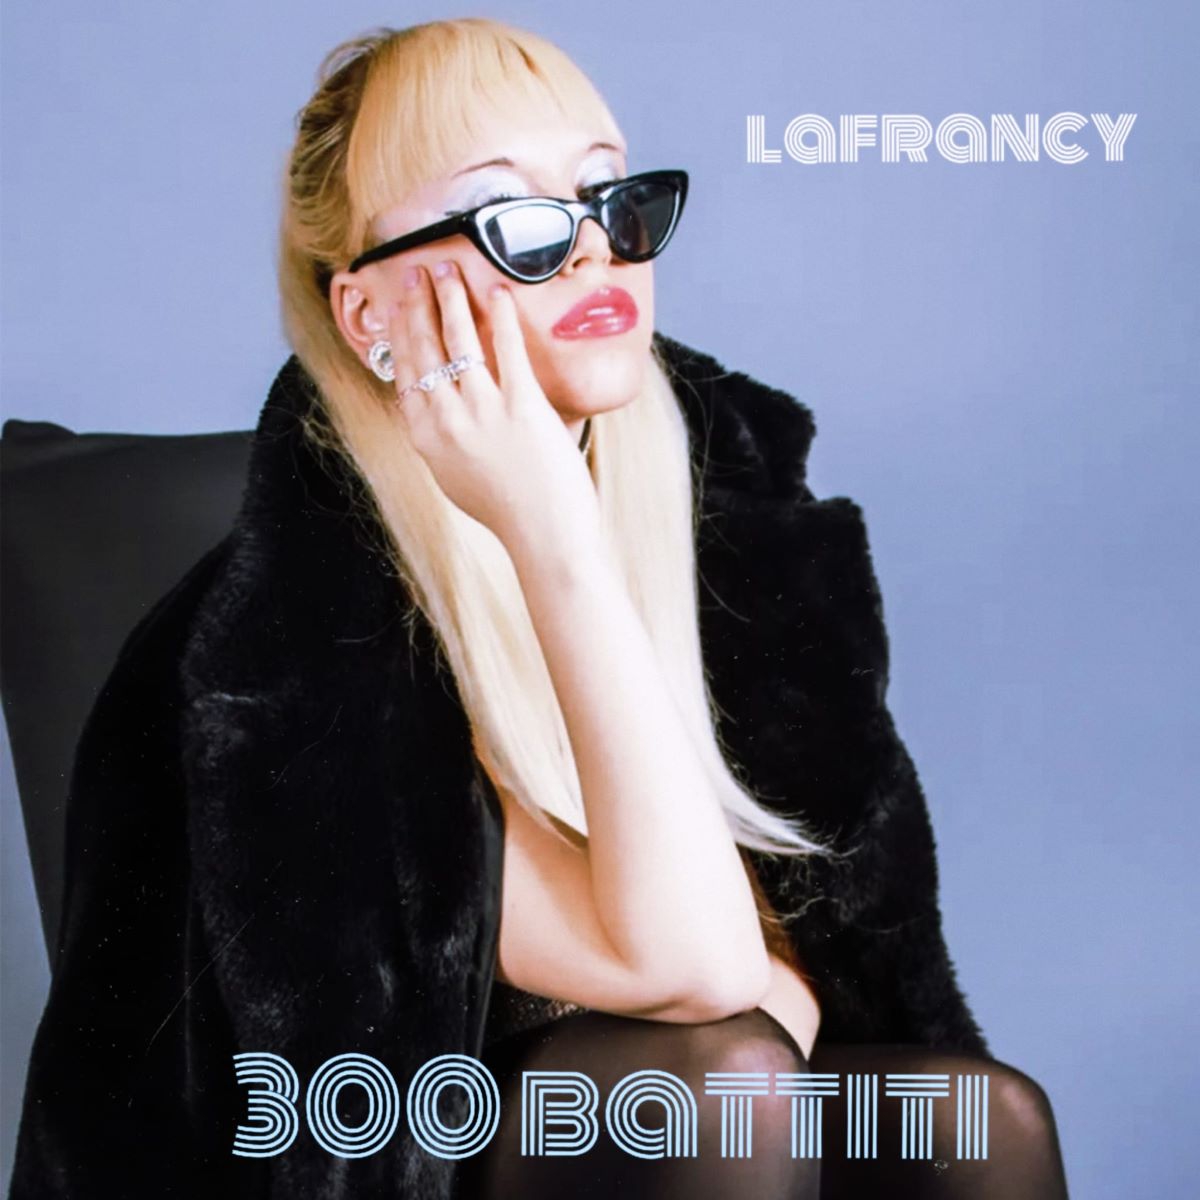 LaFrancy - “300 Battiti”